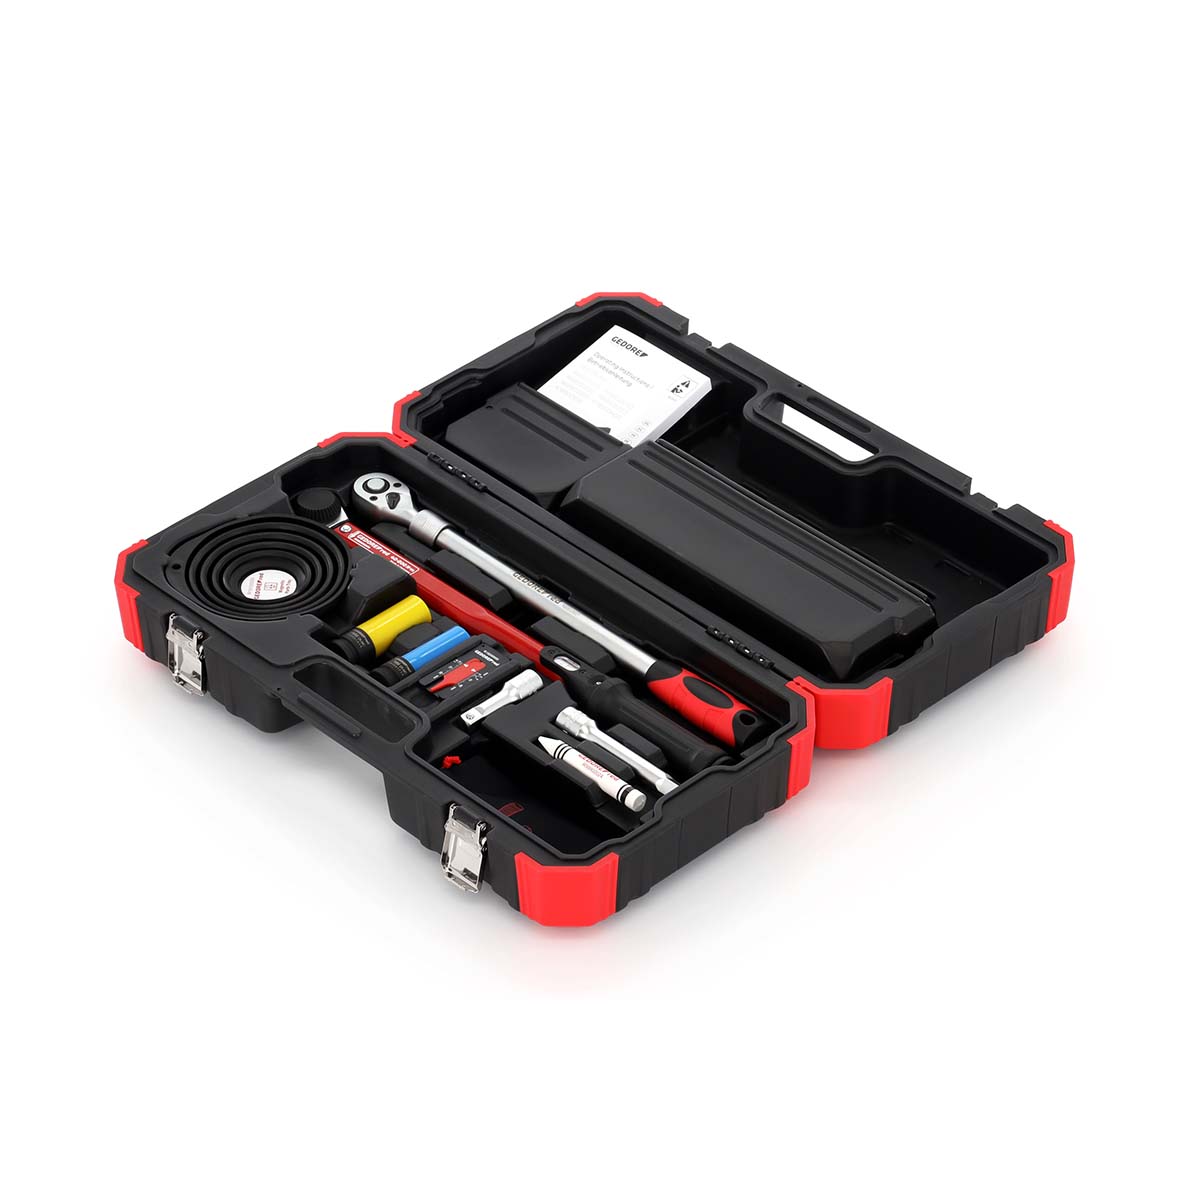 GEDORE red R68903011 - Juego de herramientas para el cambio de neumáticos, 11 piezas (3300400)